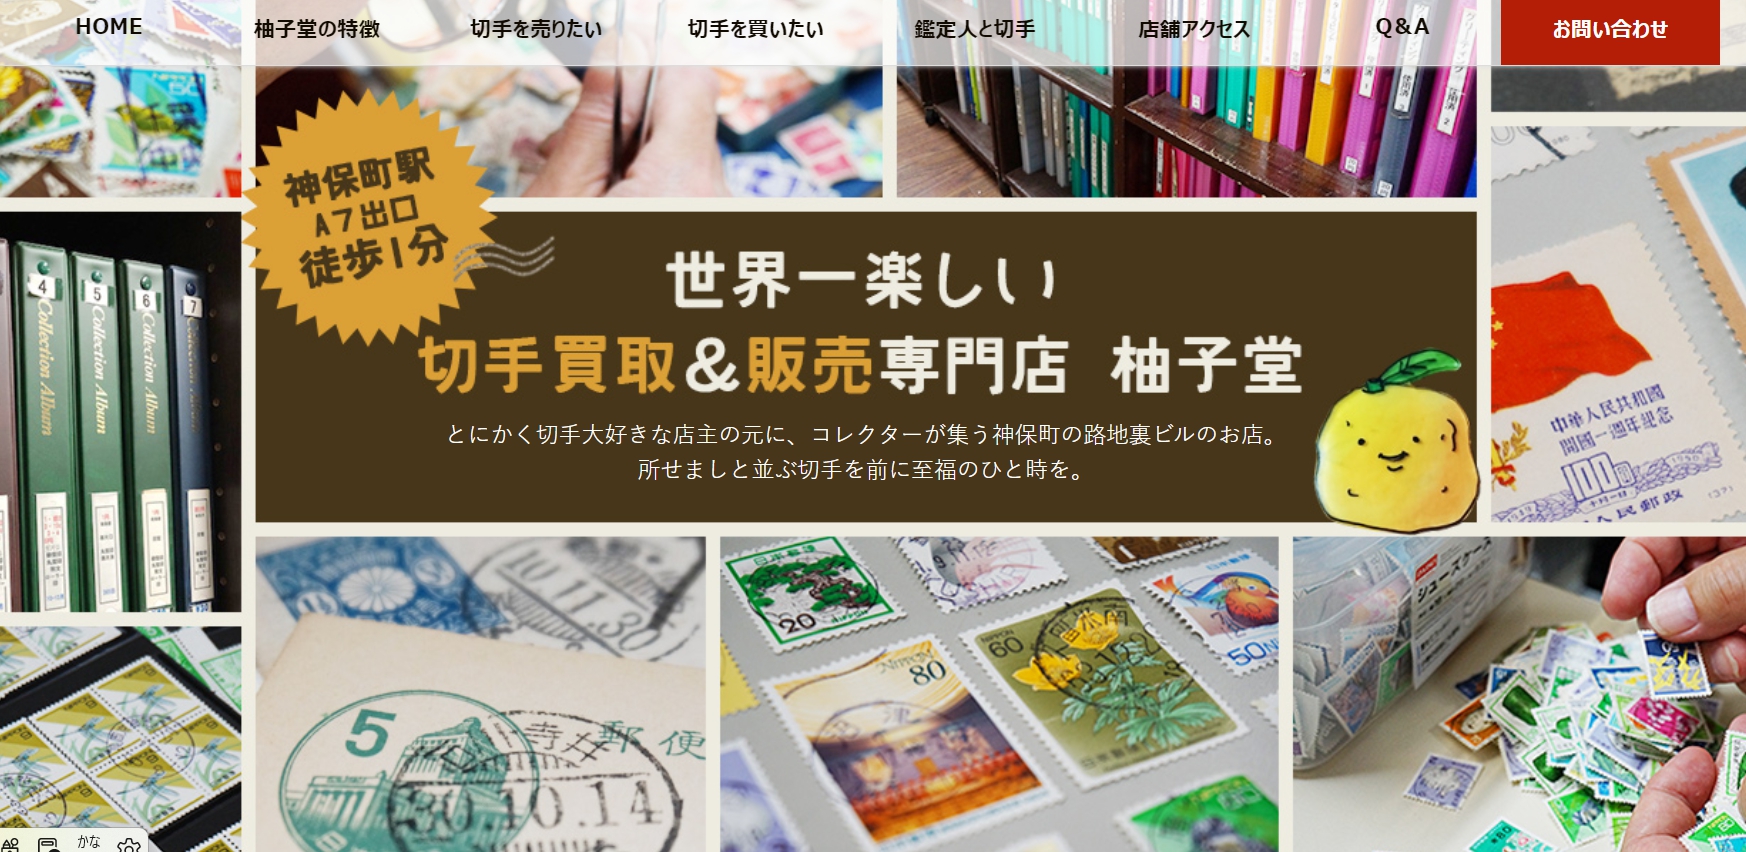 柚子堂公式サイトのトップページ